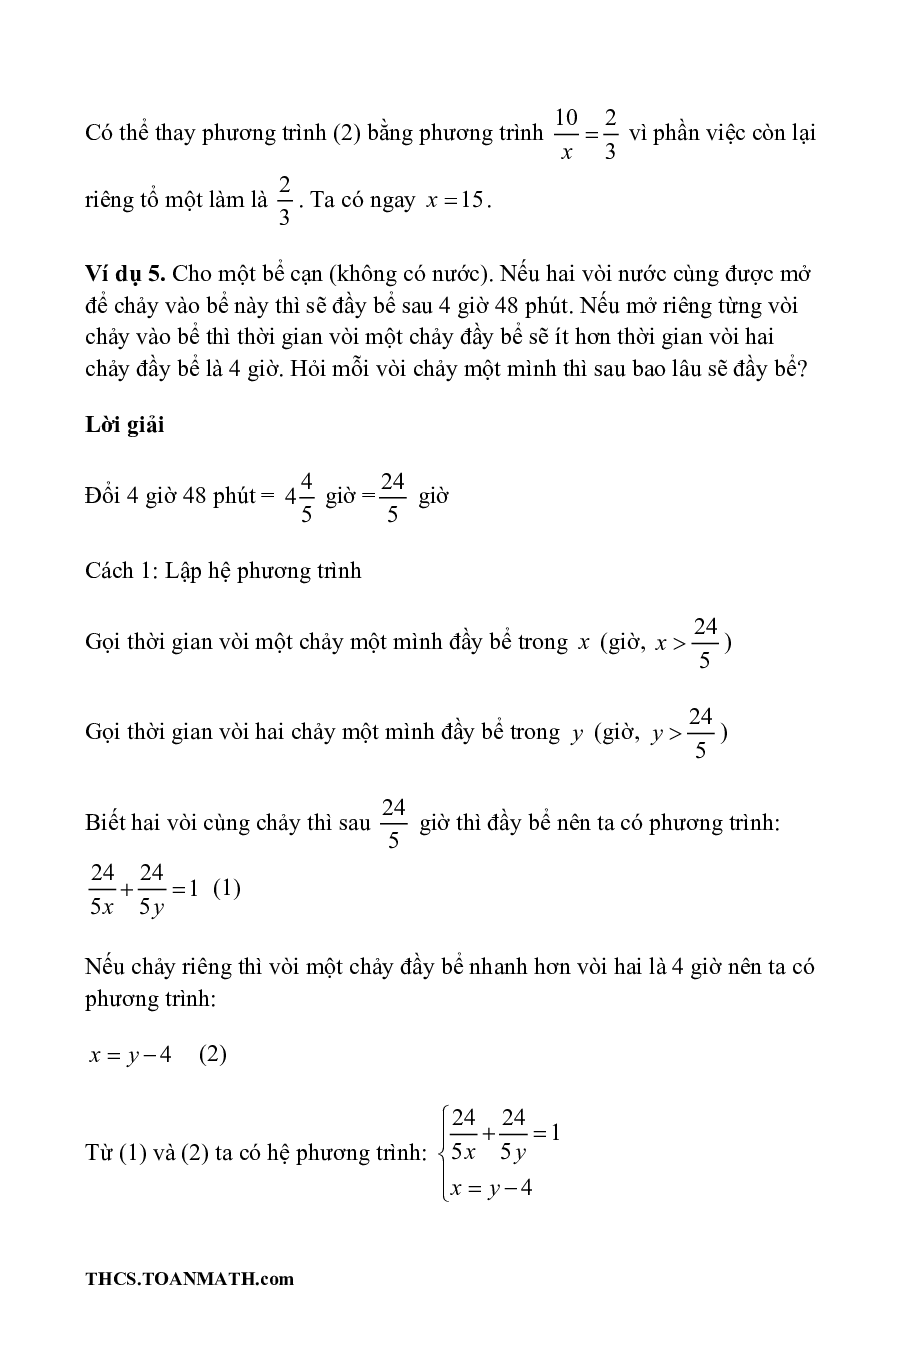 Chuyên đề giải toán bằng cách lập phương trình – hệ phương trình ôn thi vào lớp 10 (trang 10)